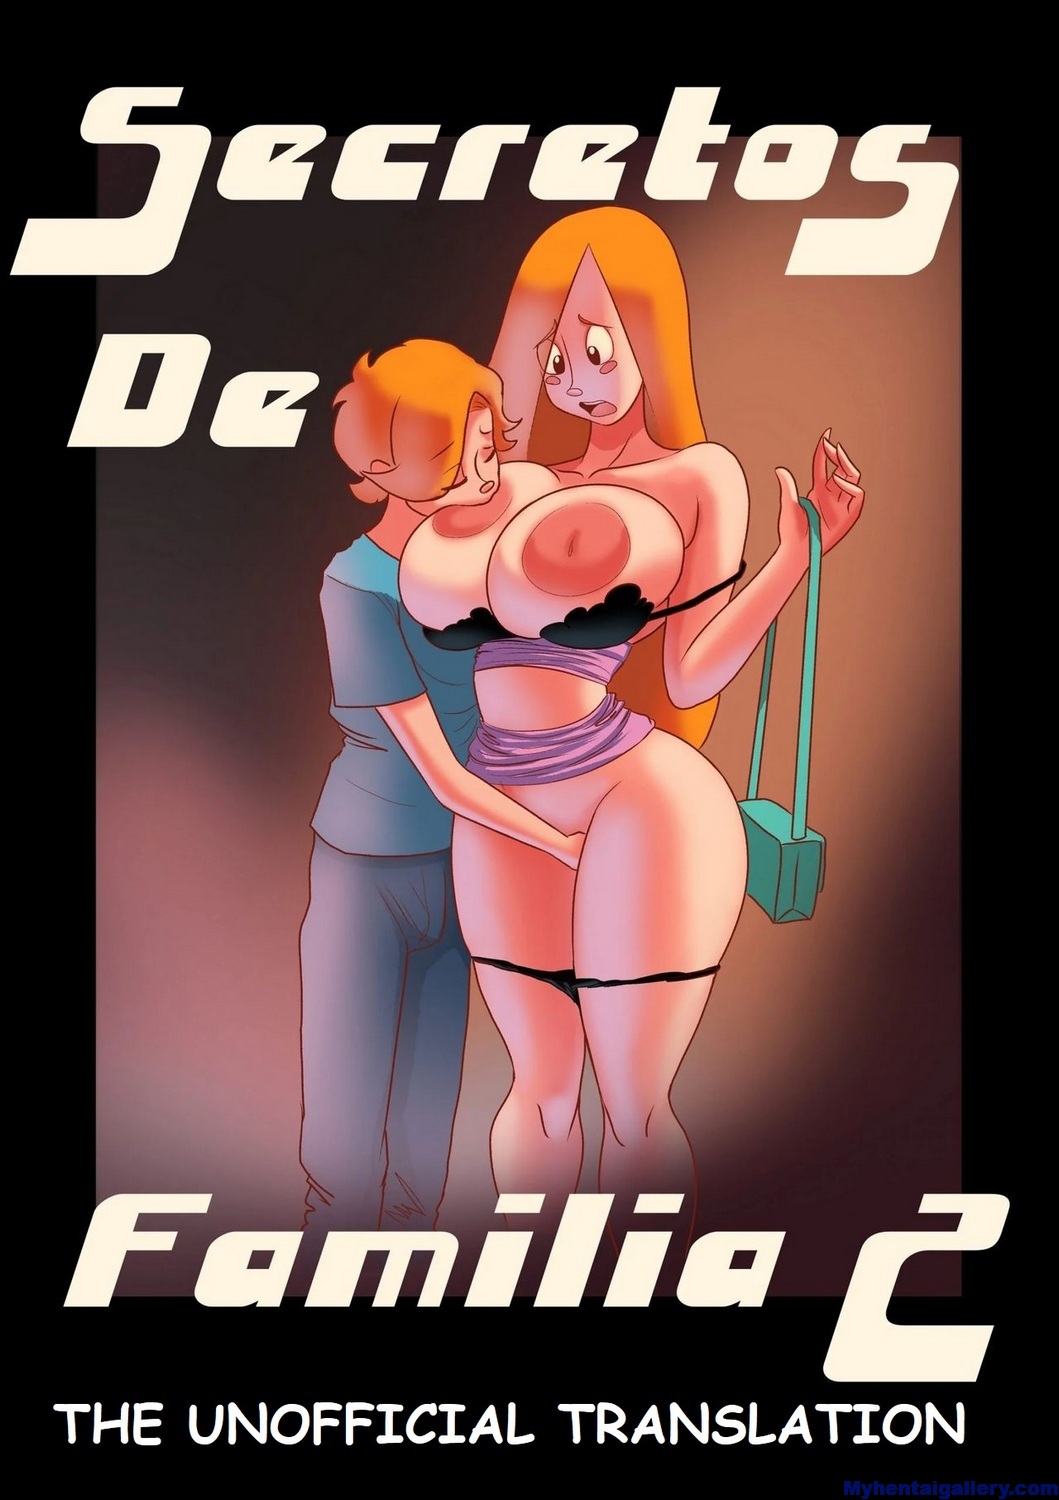 Family Secrets 2